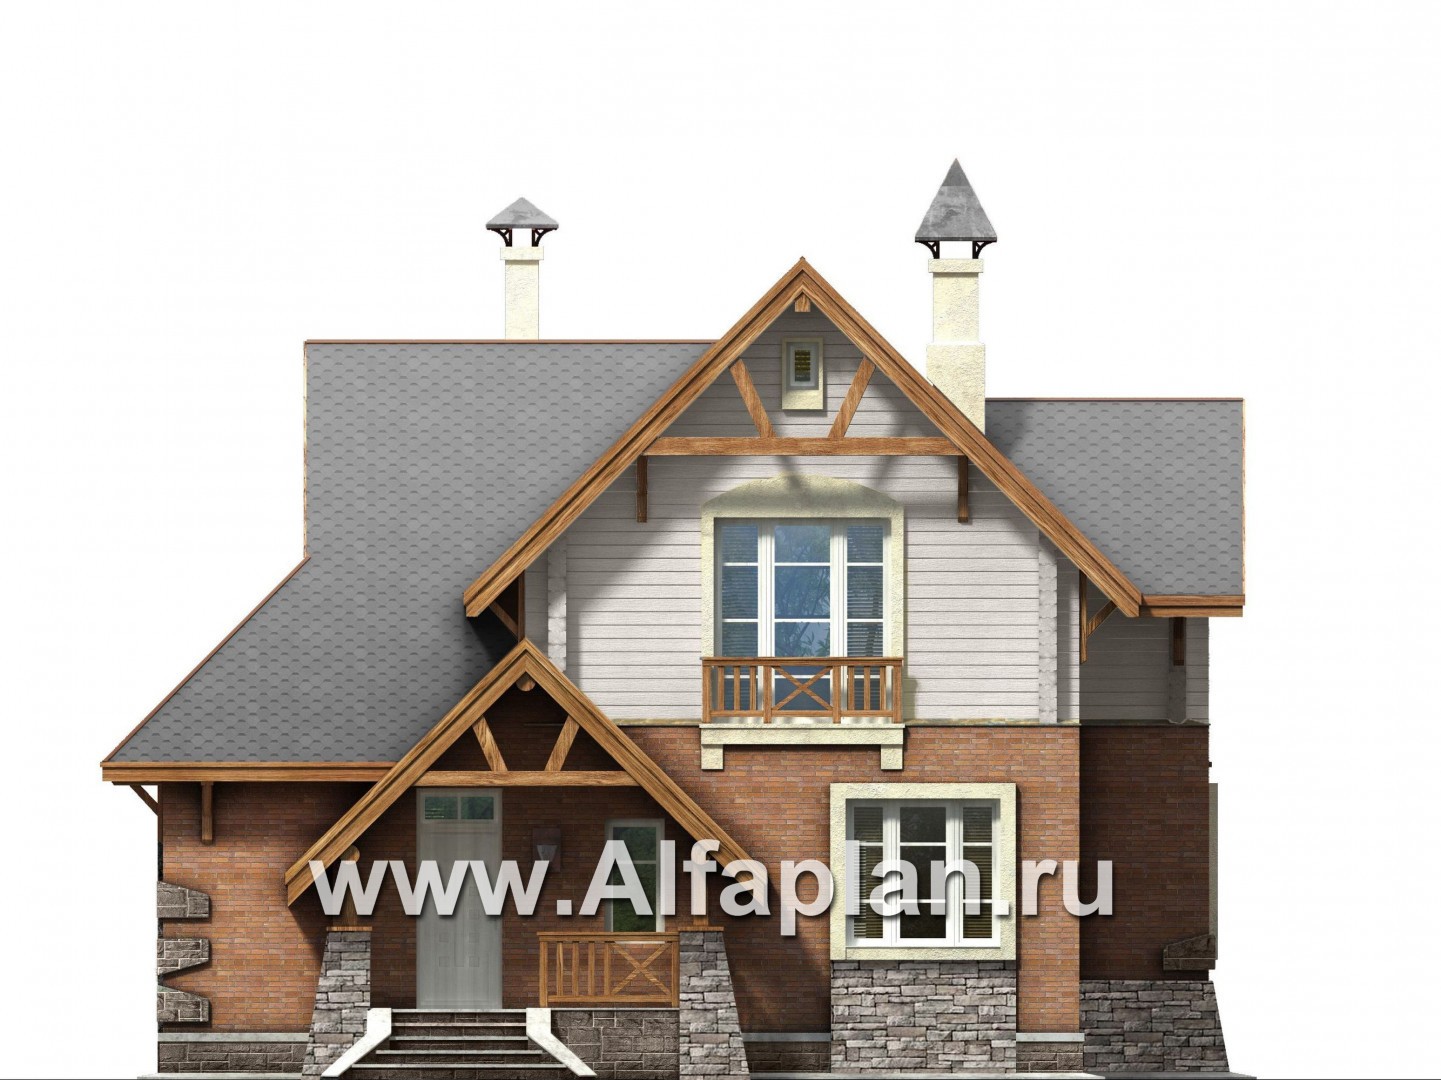 «Альпенхаус»- проект дома с мансардой, высокий потолок в гостиной, в стиле  шале, 1 эт из кирпича, 2 эт из бруса - фасад дома